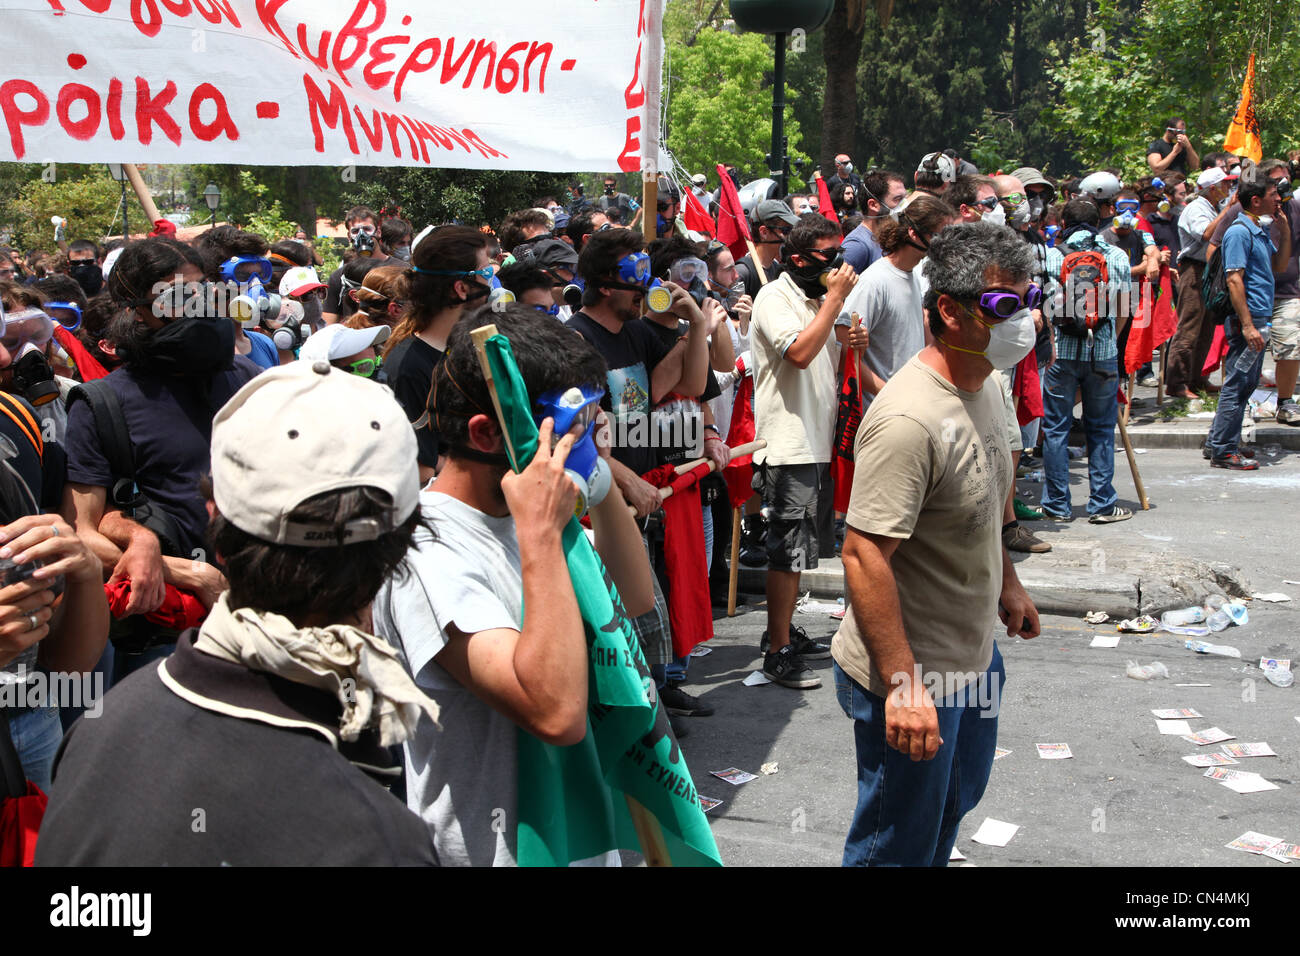 La Grèce, crise financière, des démonstrations, des émeutes Banque D'Images